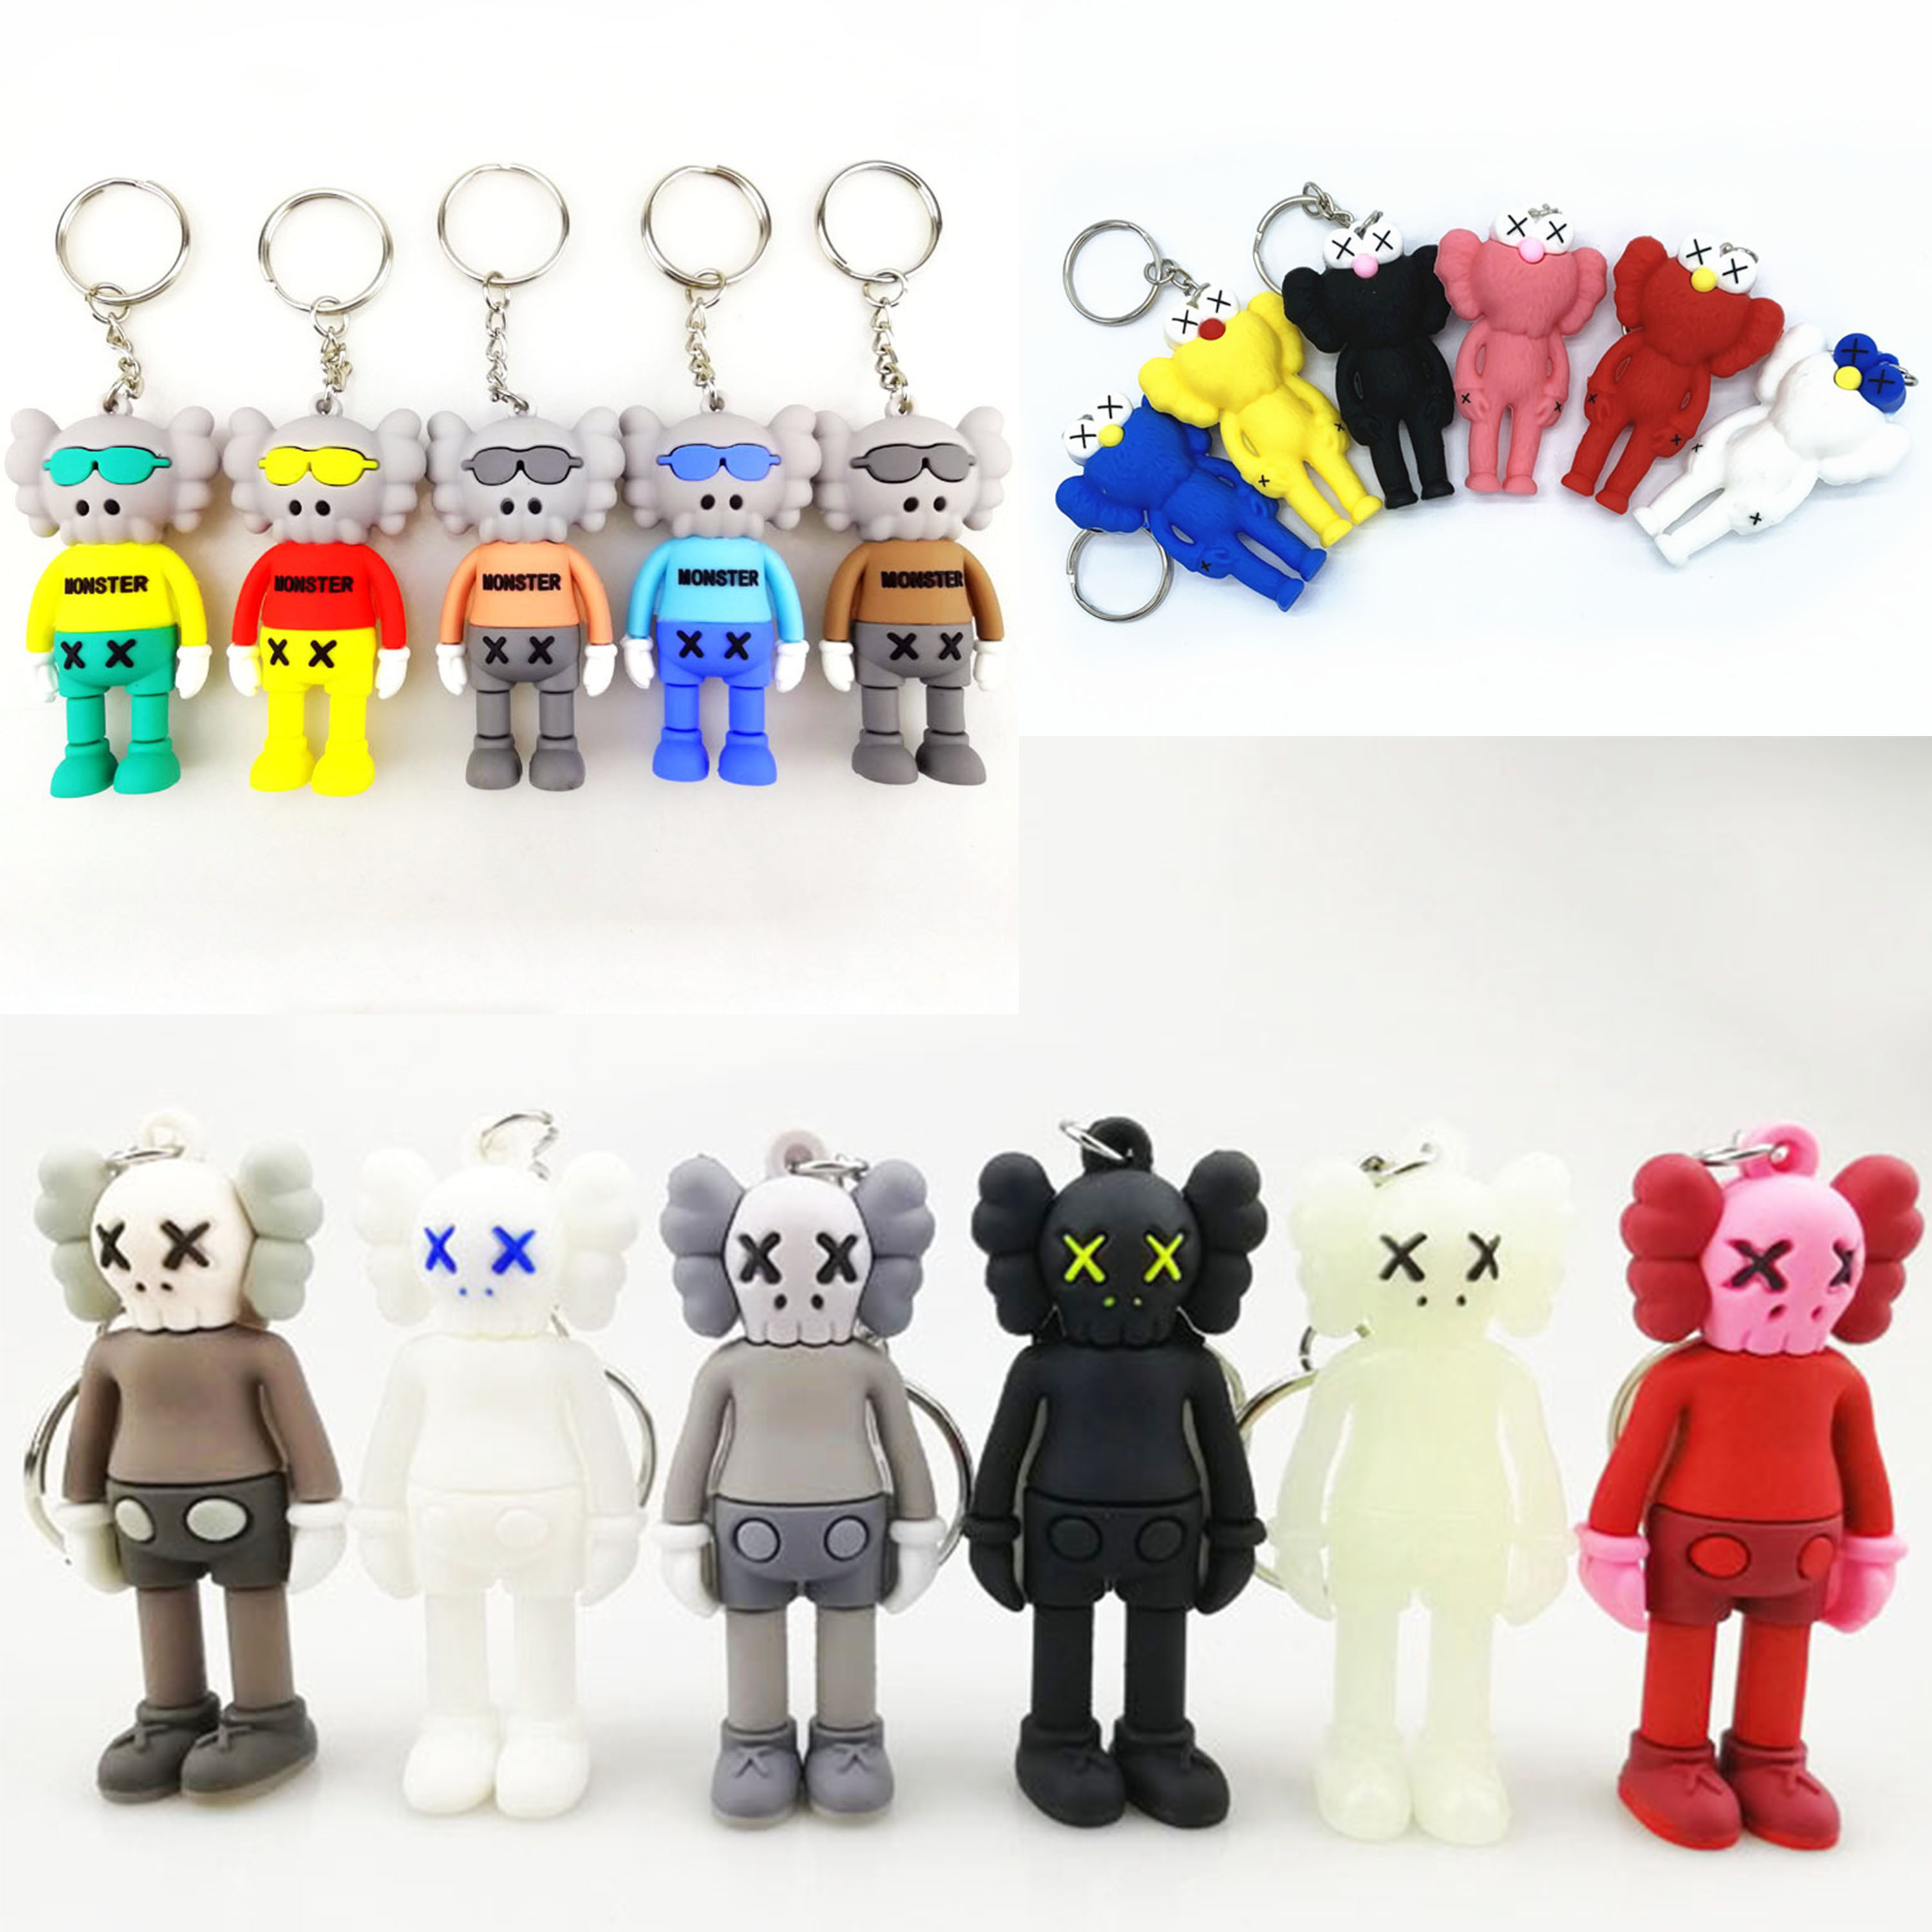 Nuovo designer di bambole per bambole per la scatola della moda Cleychain Cartoon Cartoon Sesame Street Key Chain Accessori Pvc Action Figures Gacche